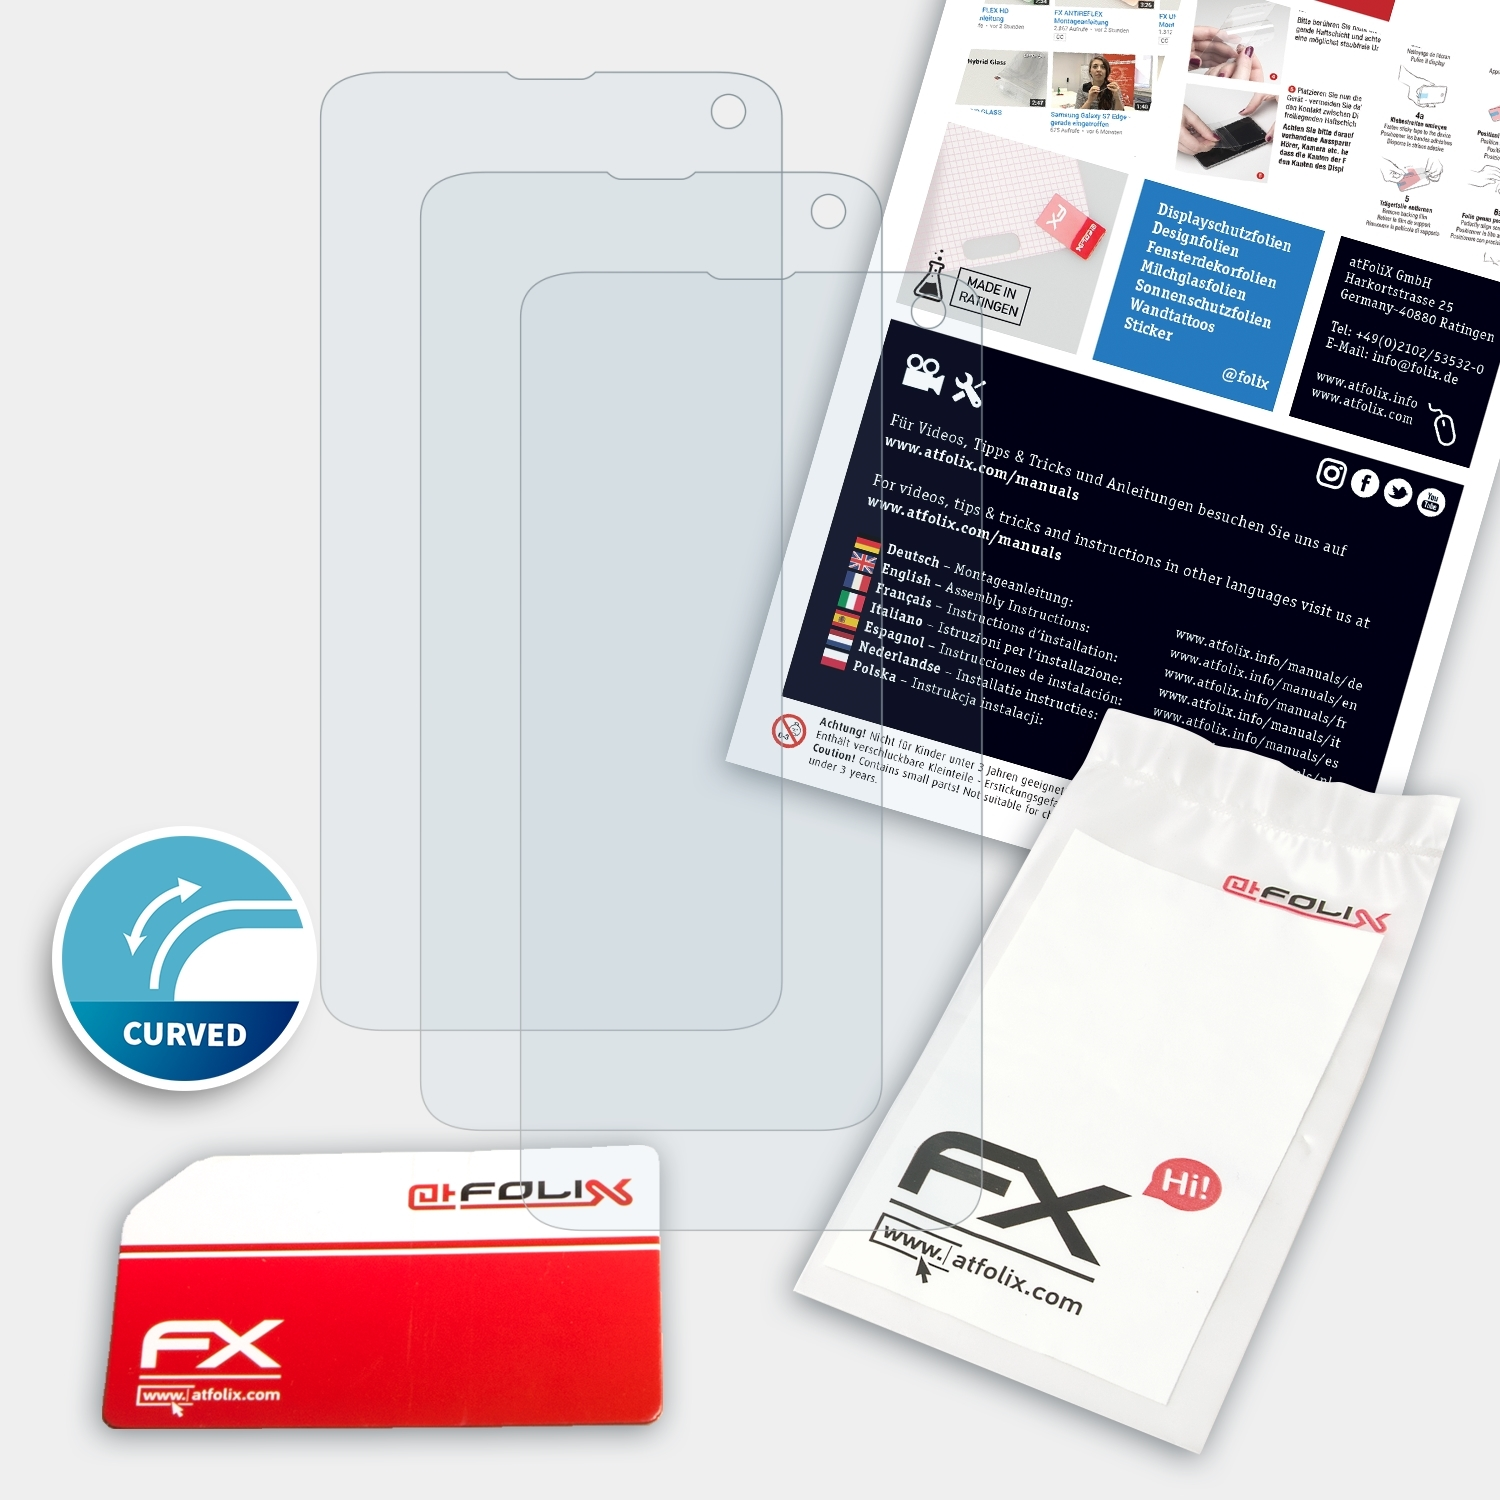 ATFOLIX Galaxy FX-ActiFleX Samsung S10 3x Displayschutz(für (Casefit))